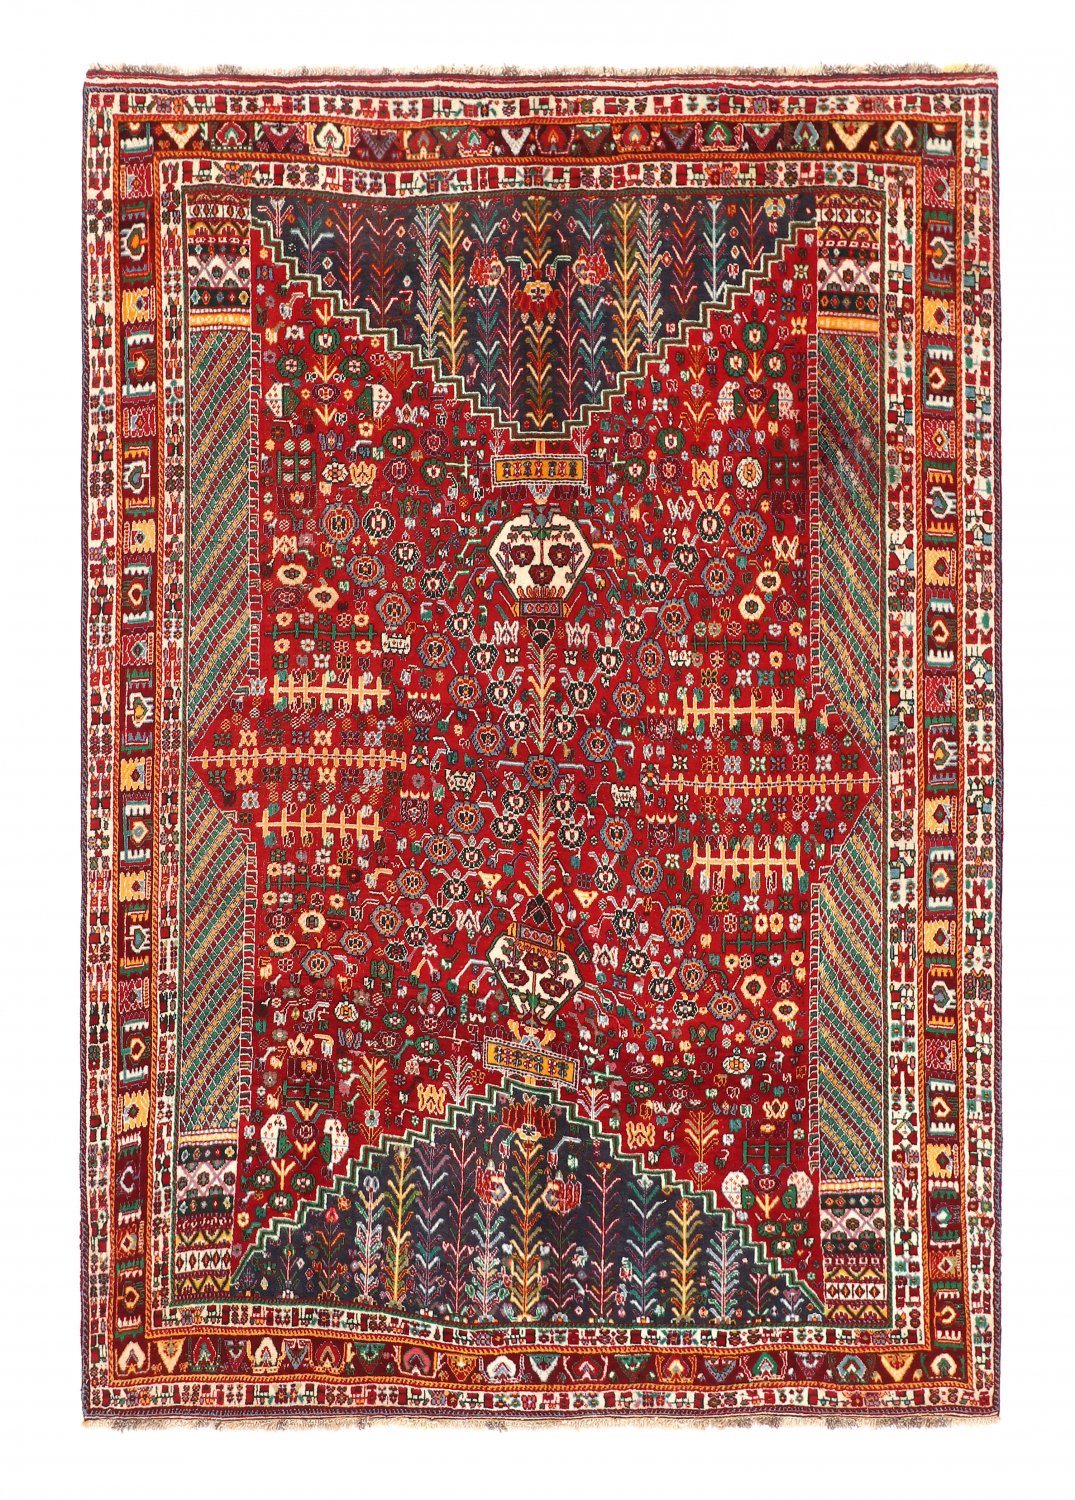 Persian rug Hamedan 298 x 205 cm